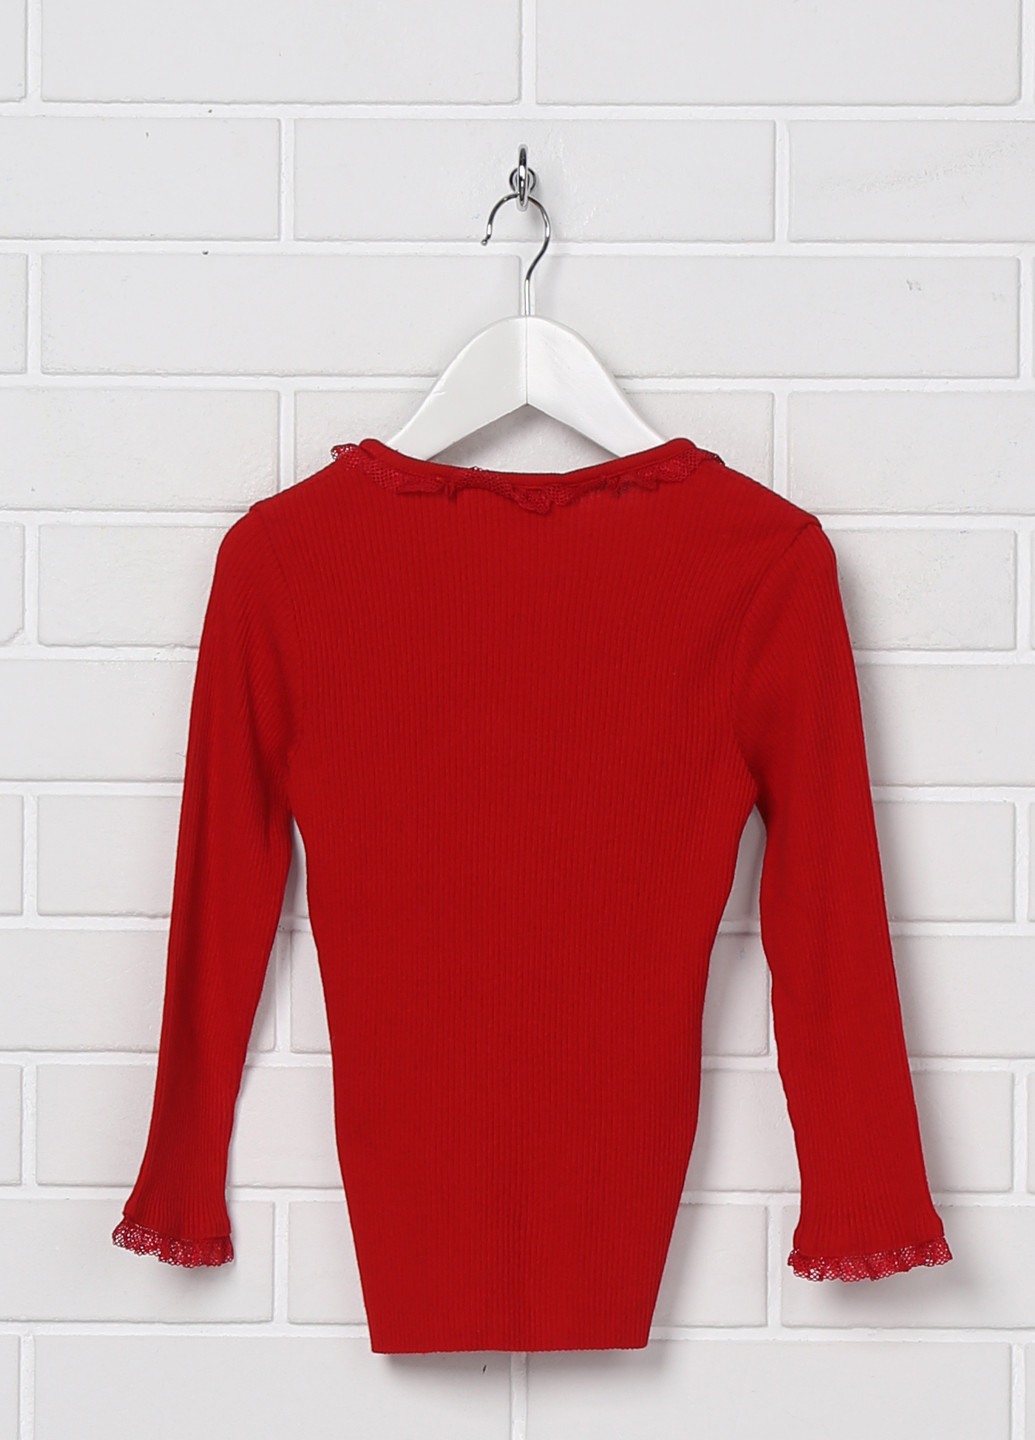 Красный демисезонный пуловер пуловер Blumarine